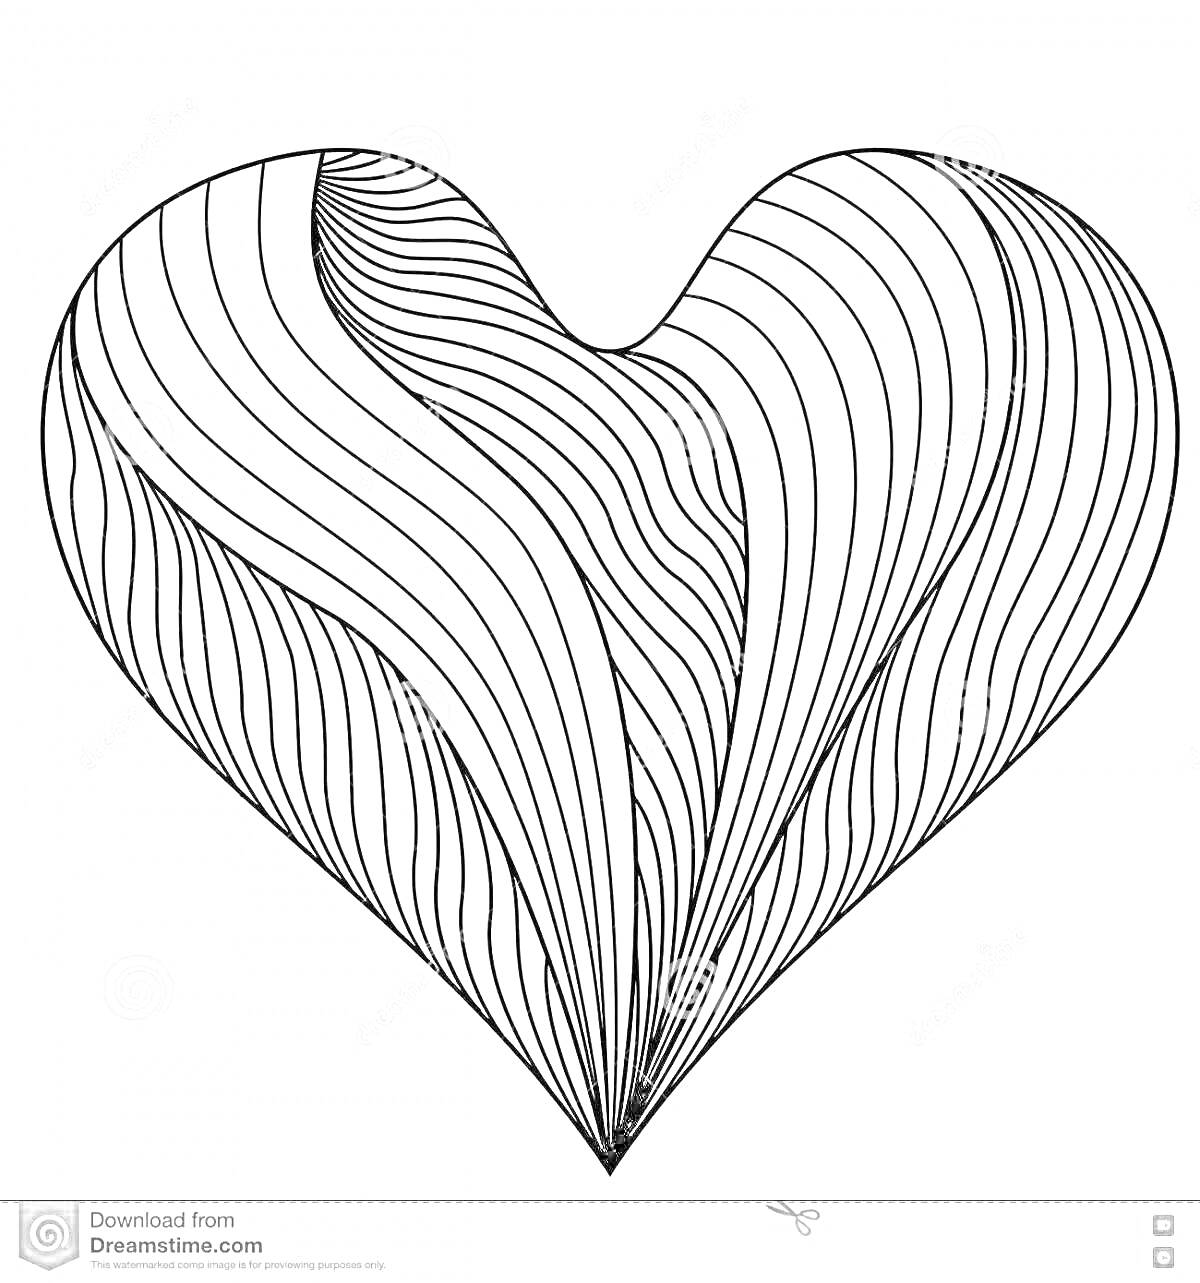 Раскраска Раскраска с сердечком, состоящим из изогнутых линий